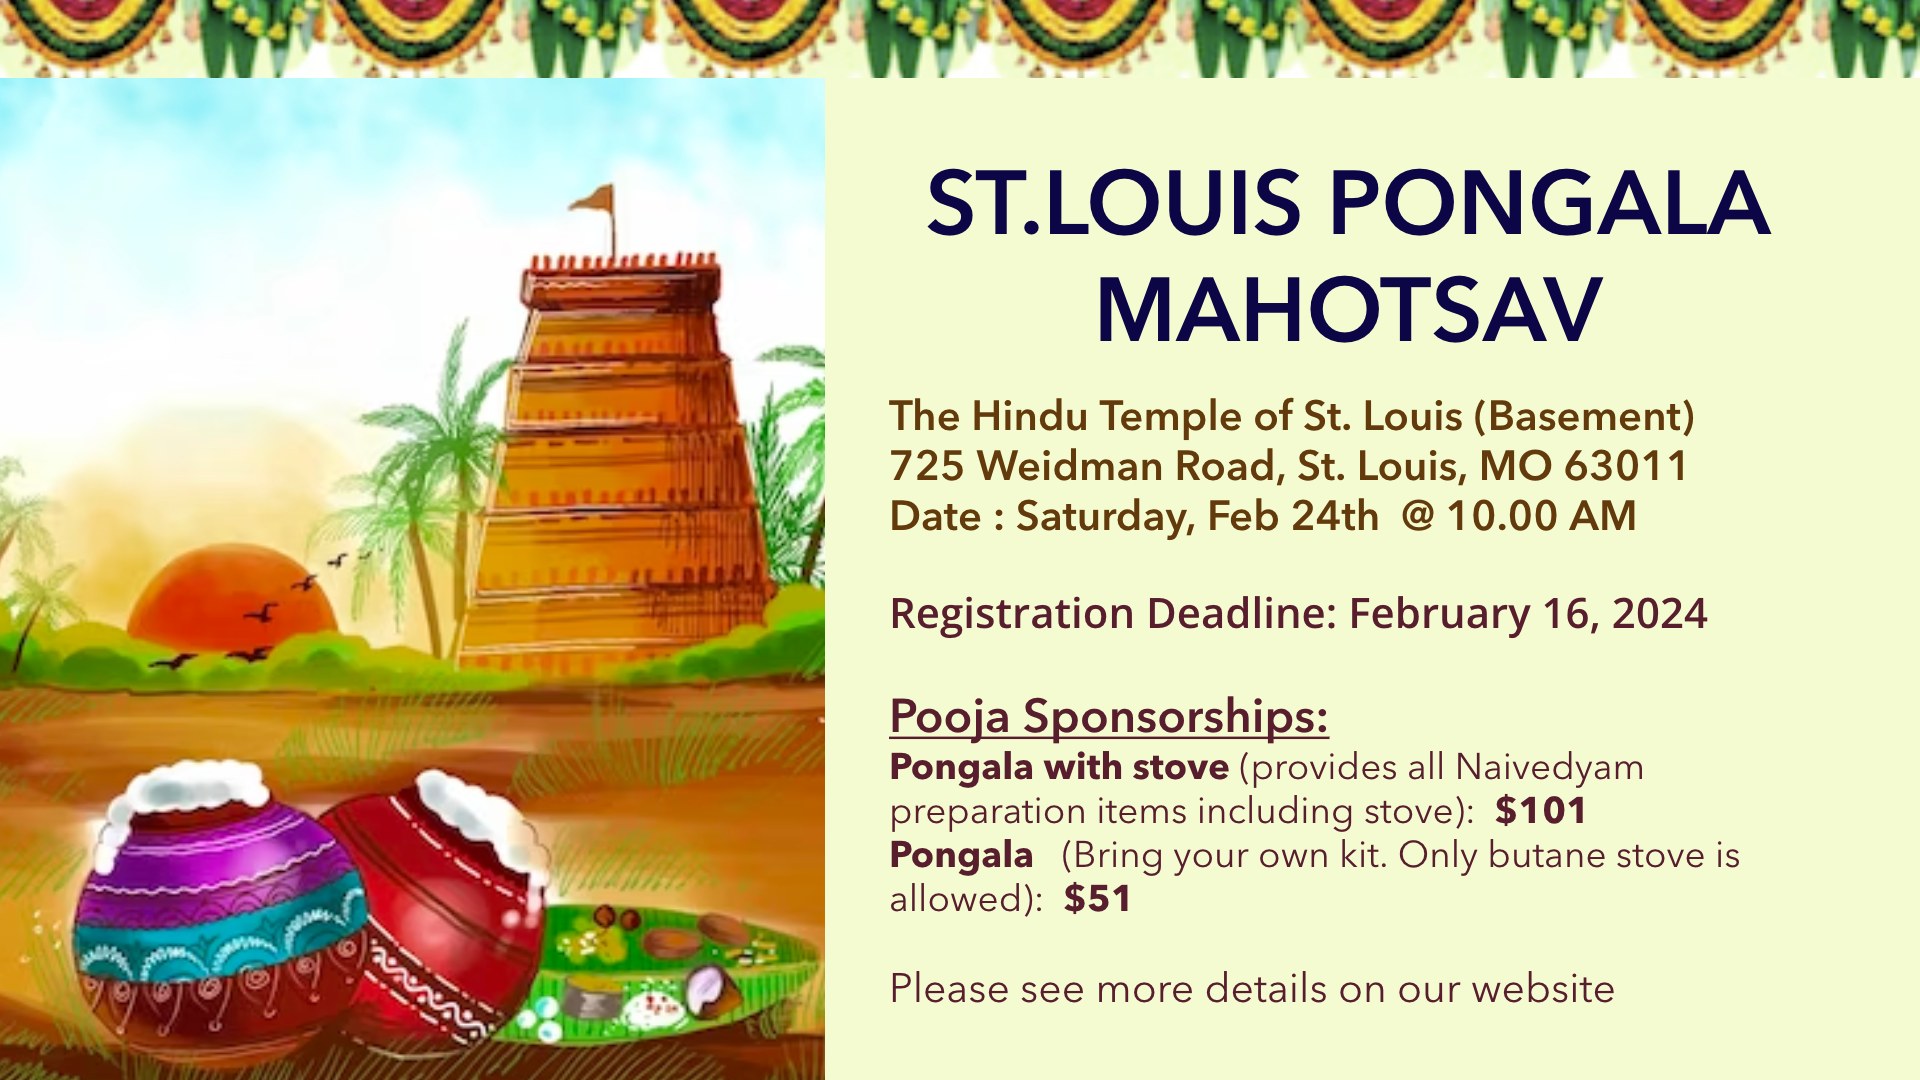 St.Louis Pongala Mahotsav